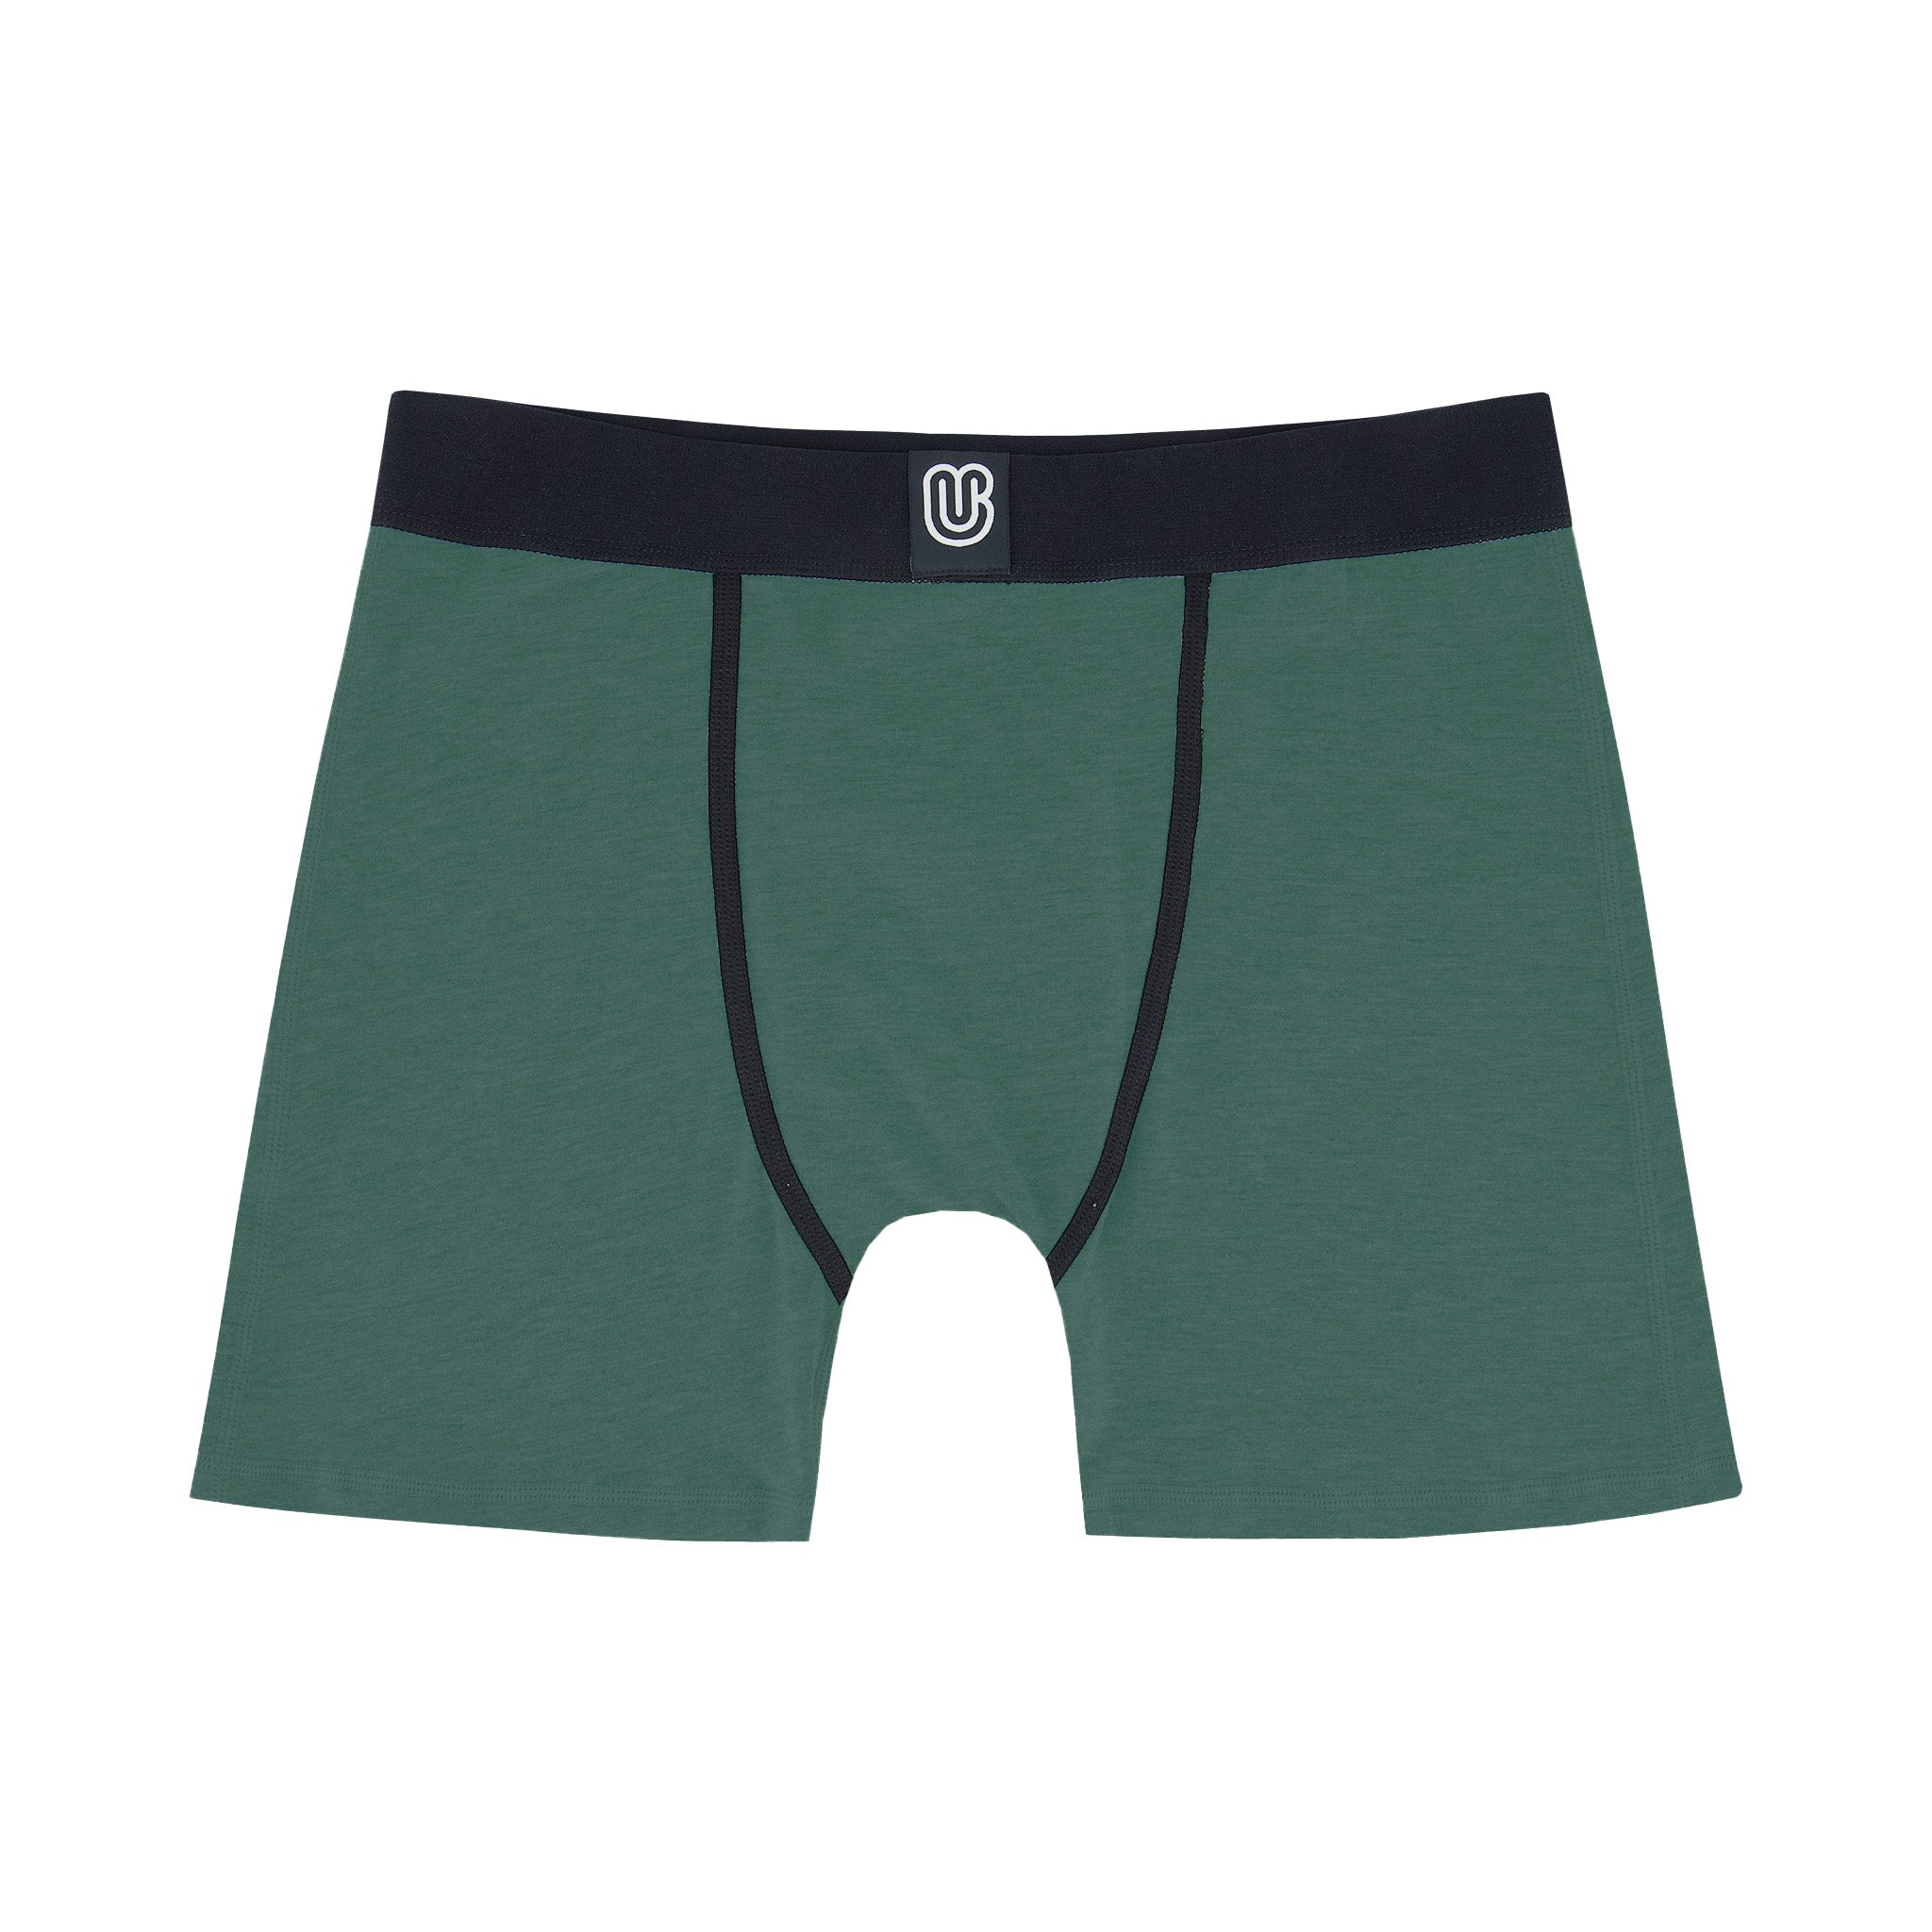 Dutch Army Mens Green Lycra Boxer Shorts Briefs ECW Soldier Underwear Pants  T26